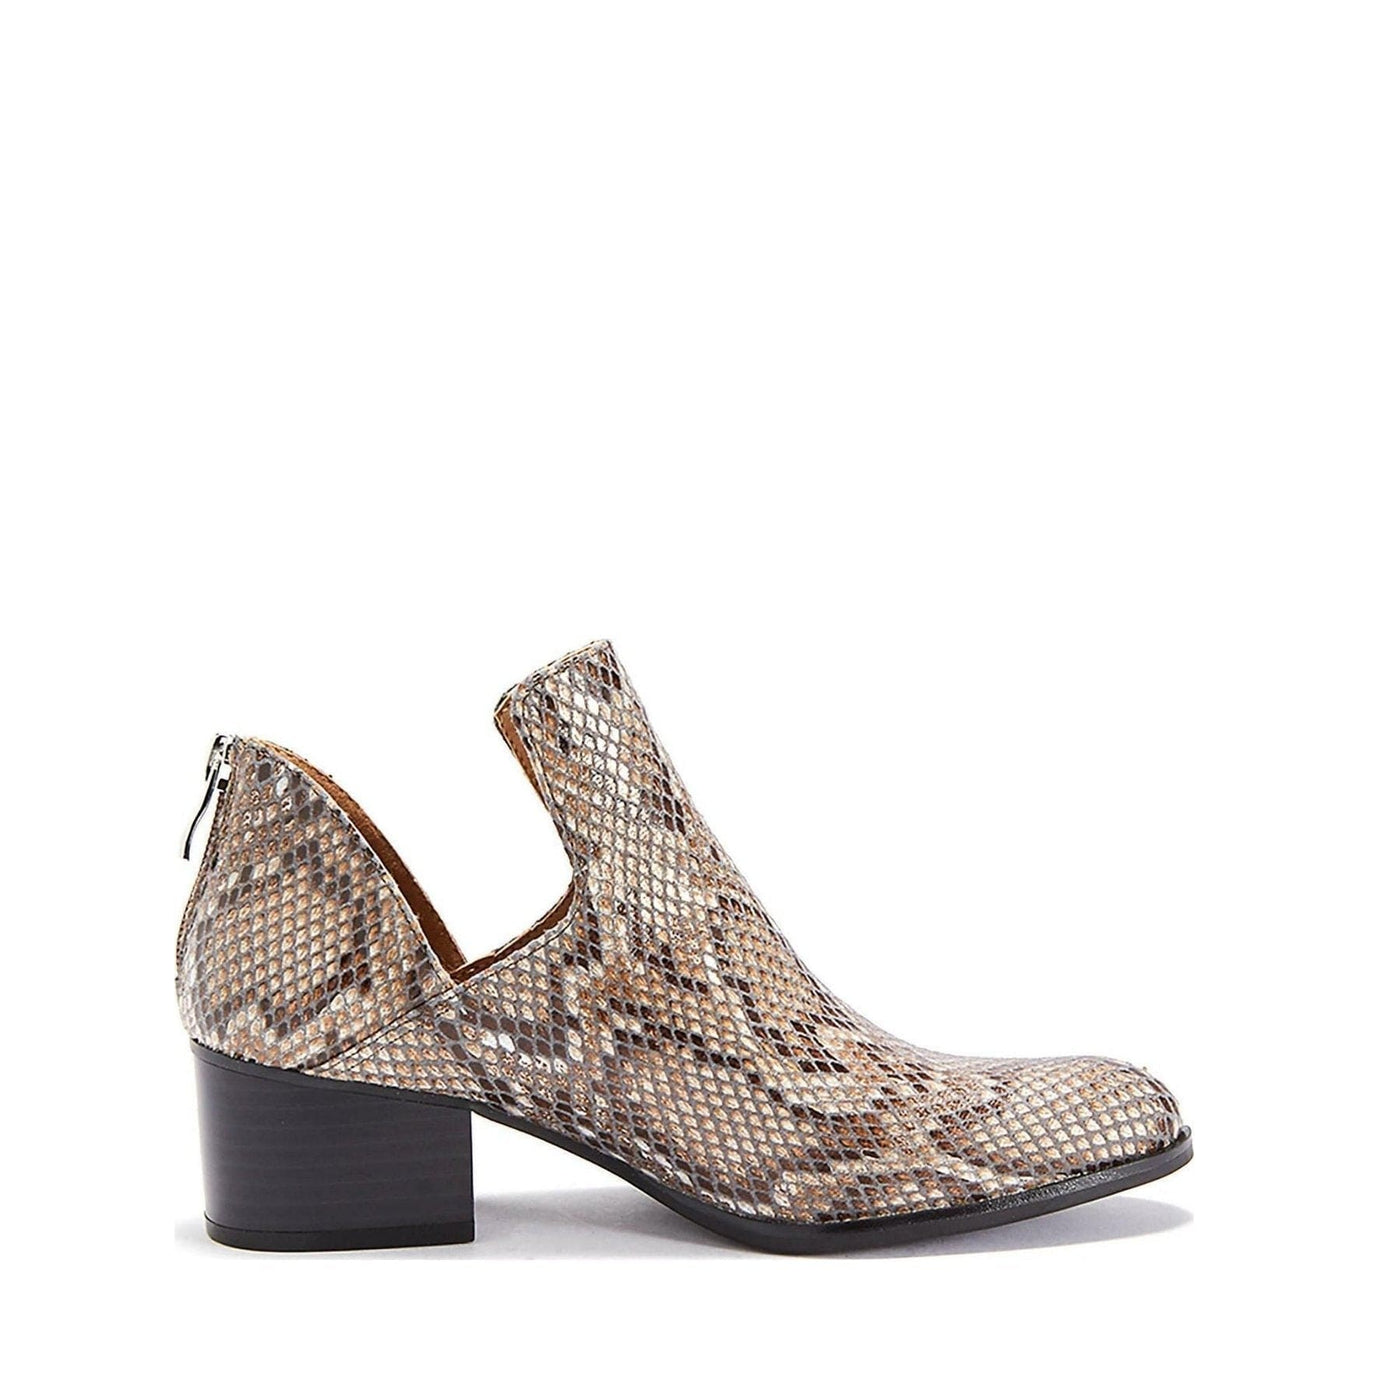 Womens Shoe Low Heel Snakeskin Style Fredricka Booties (size 7.5) - Deals |